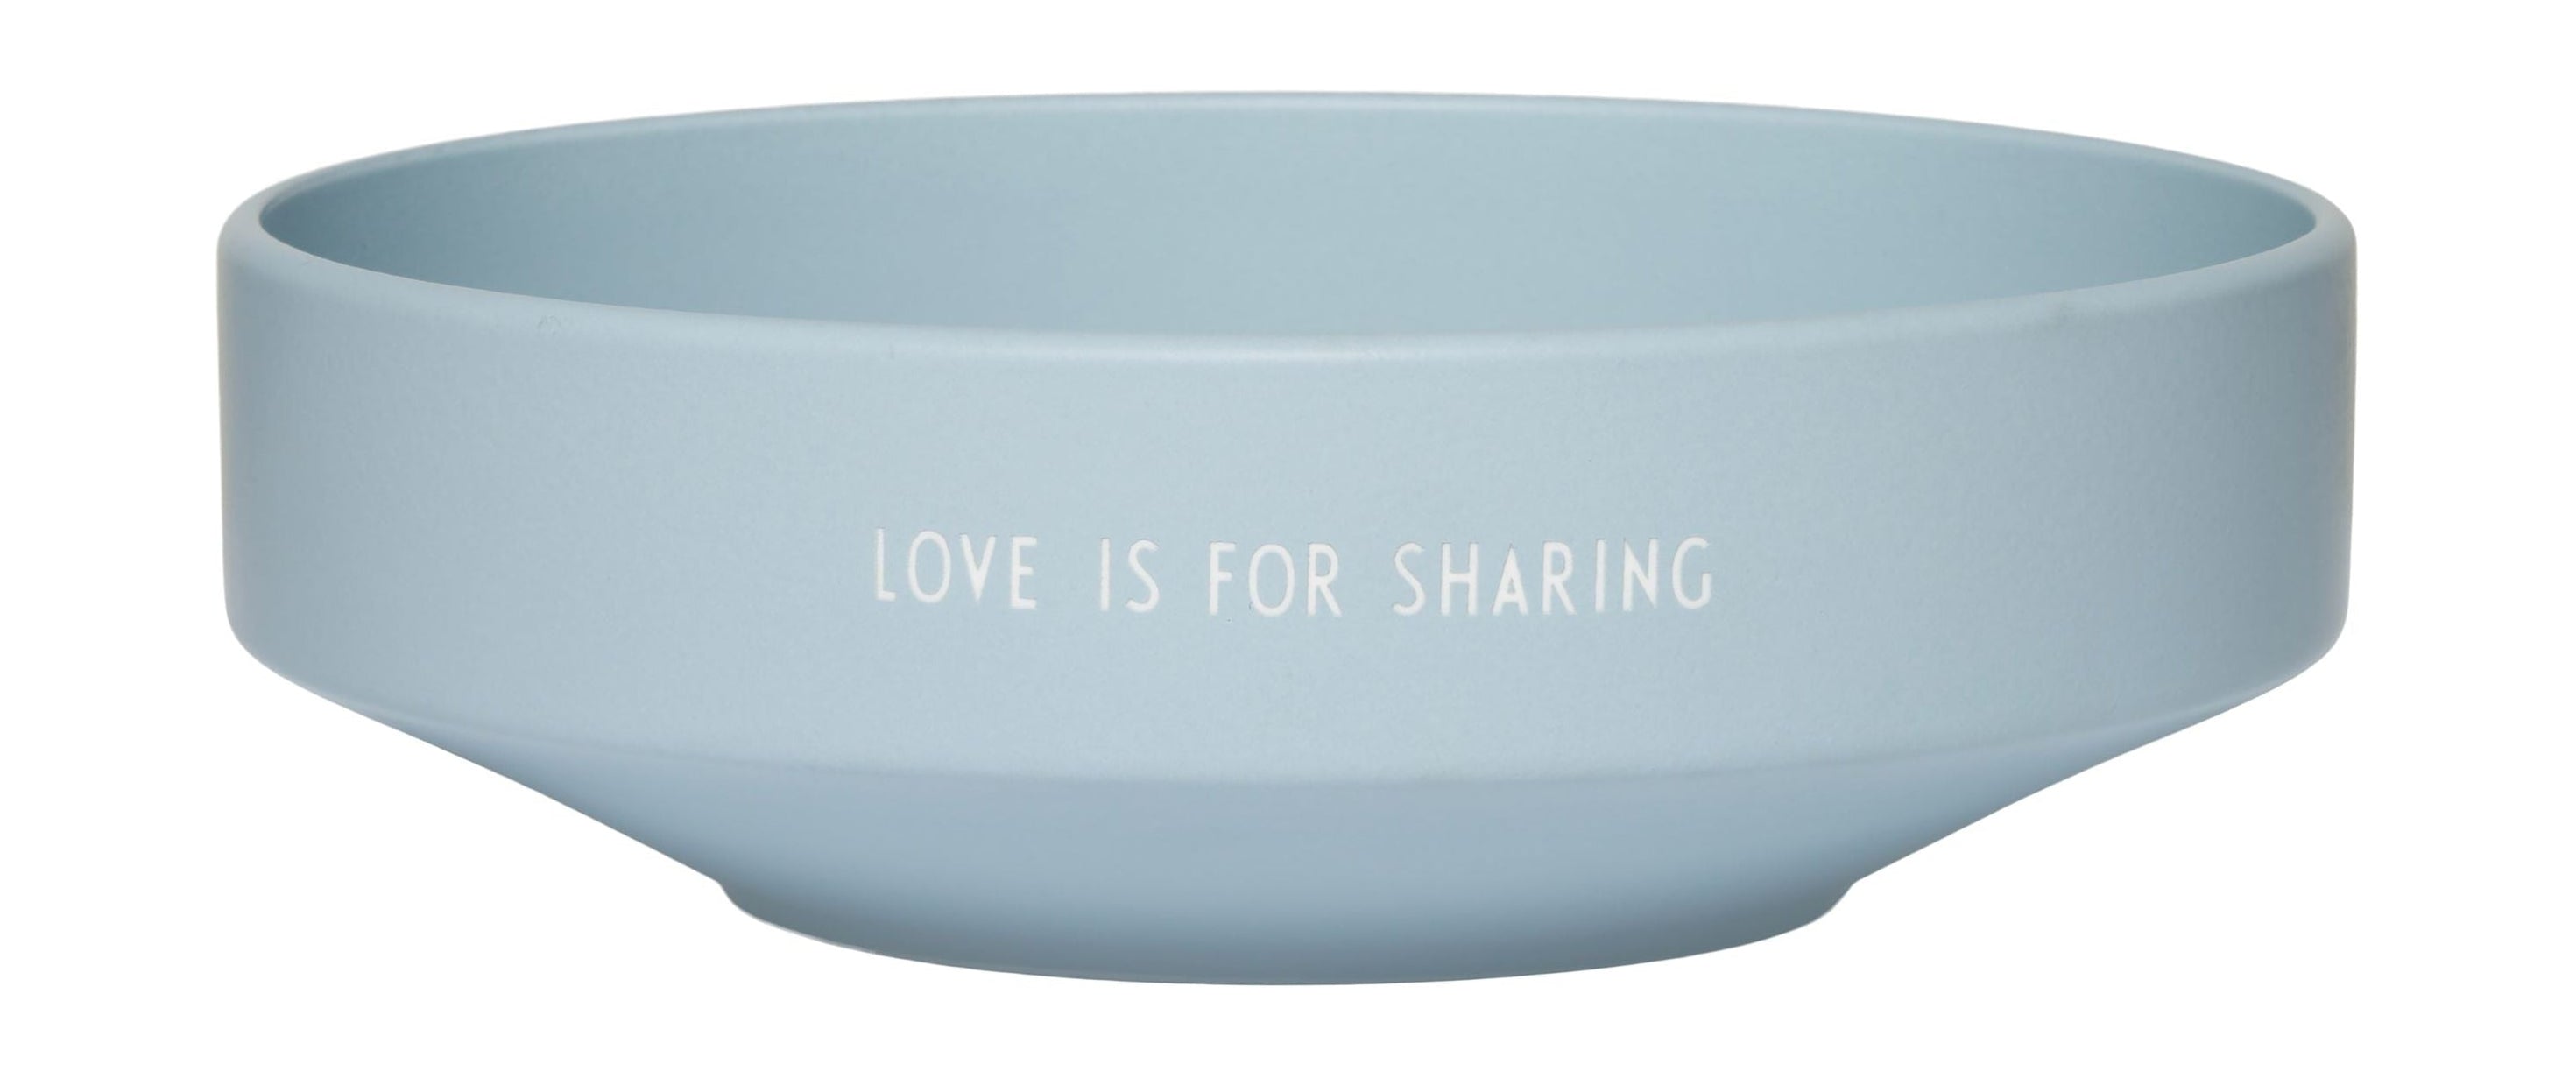 Letras de diseño El amor del tazón favorito es para compartir el azul grande y claro